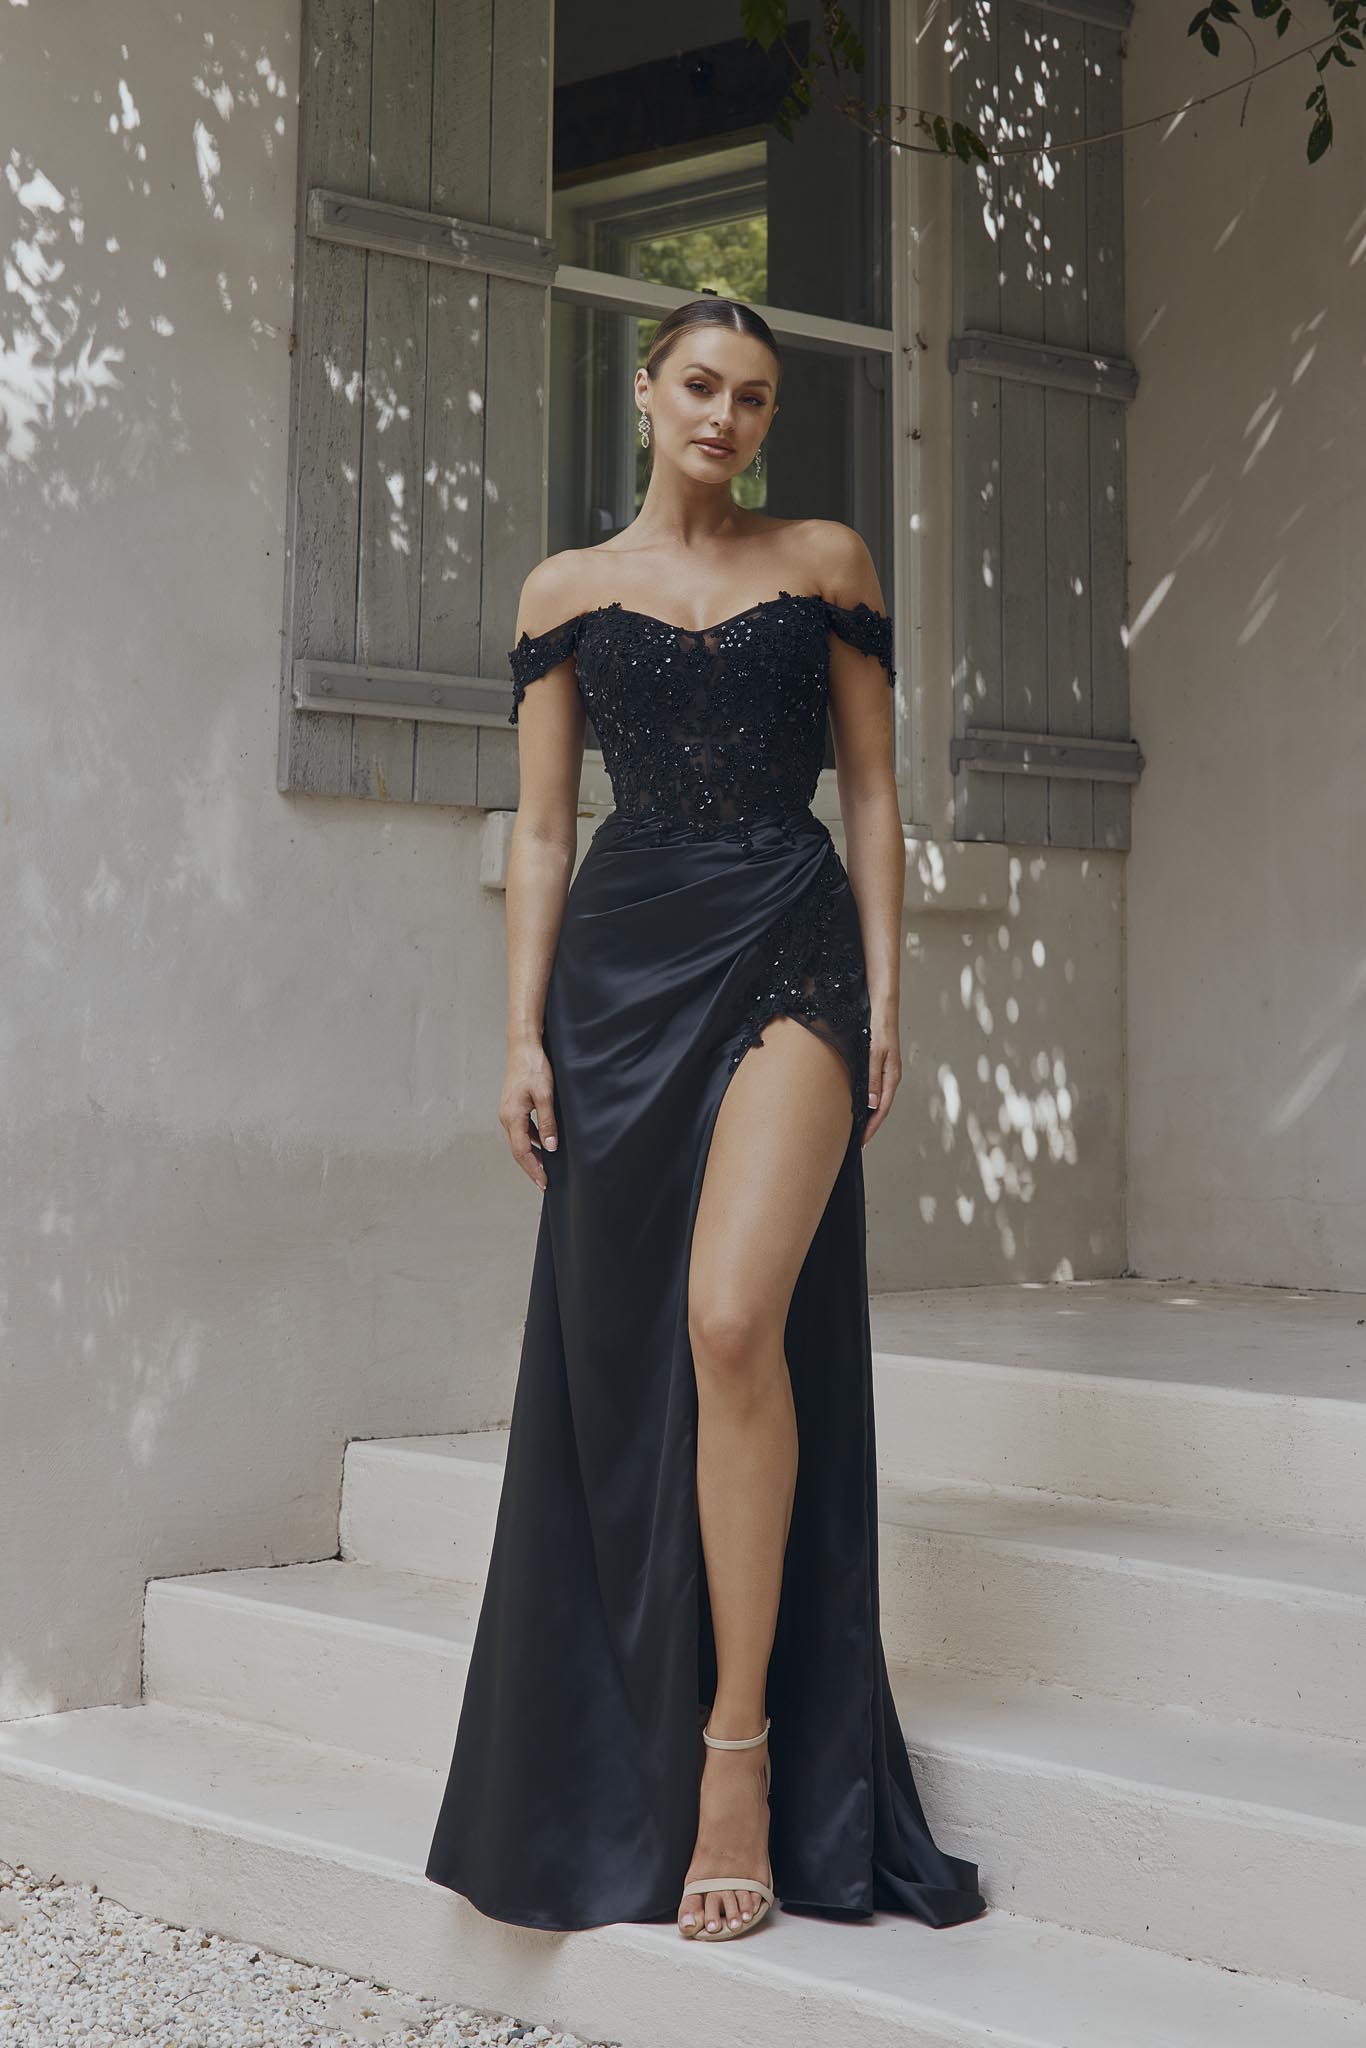 https://www.sentani.com.au/cdn/shop/products/elyssa-off-shoulder-lace-corset-evening-dress-po2320-255628.jpg?v=1687470156